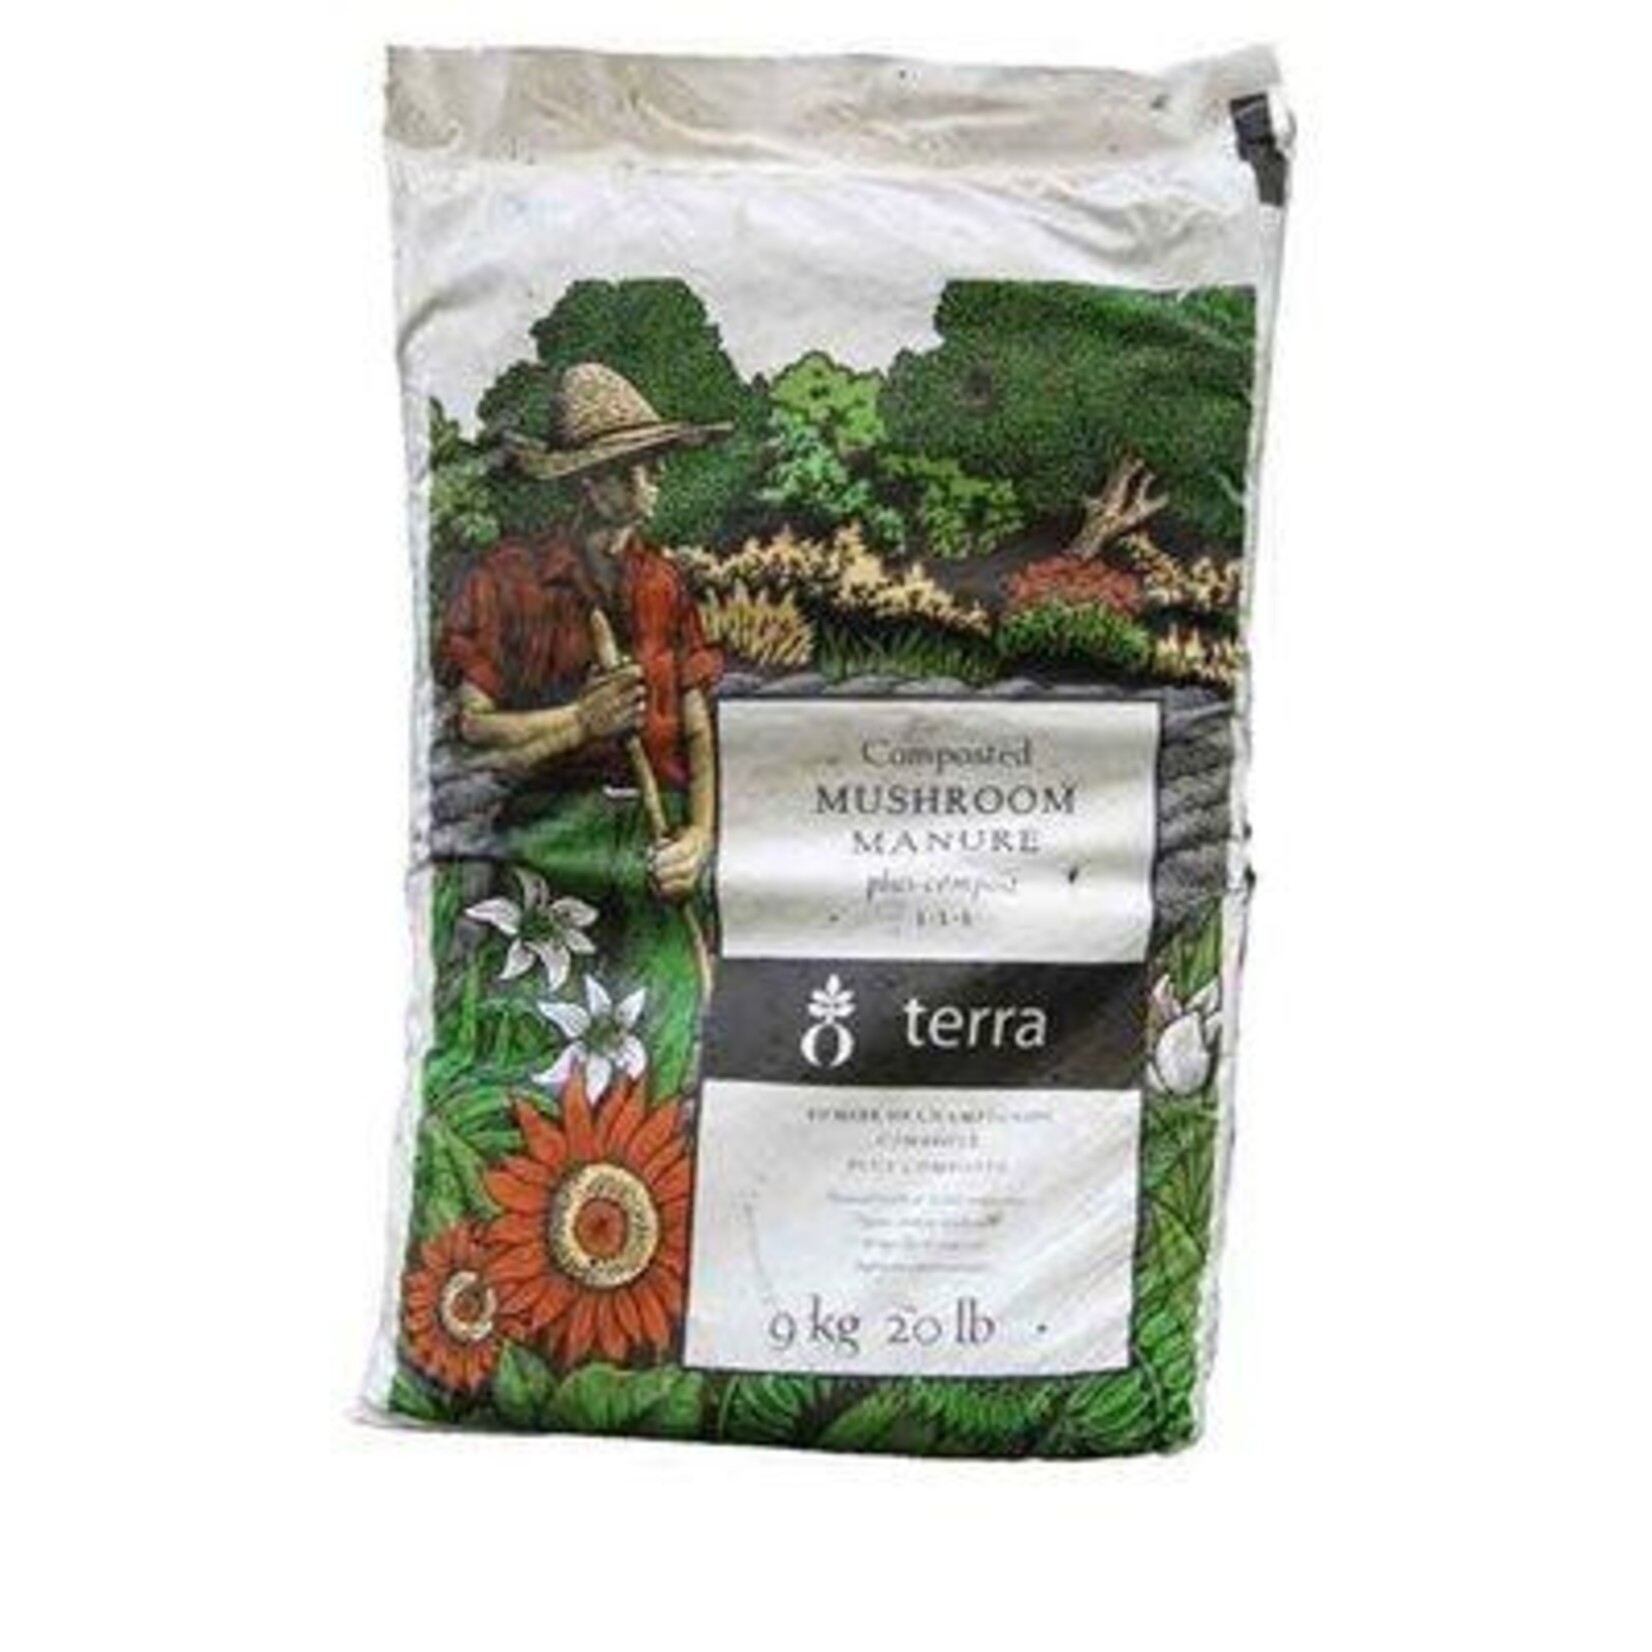 EDDIS Terra Mushroom Manure plus compost 9.1 kg